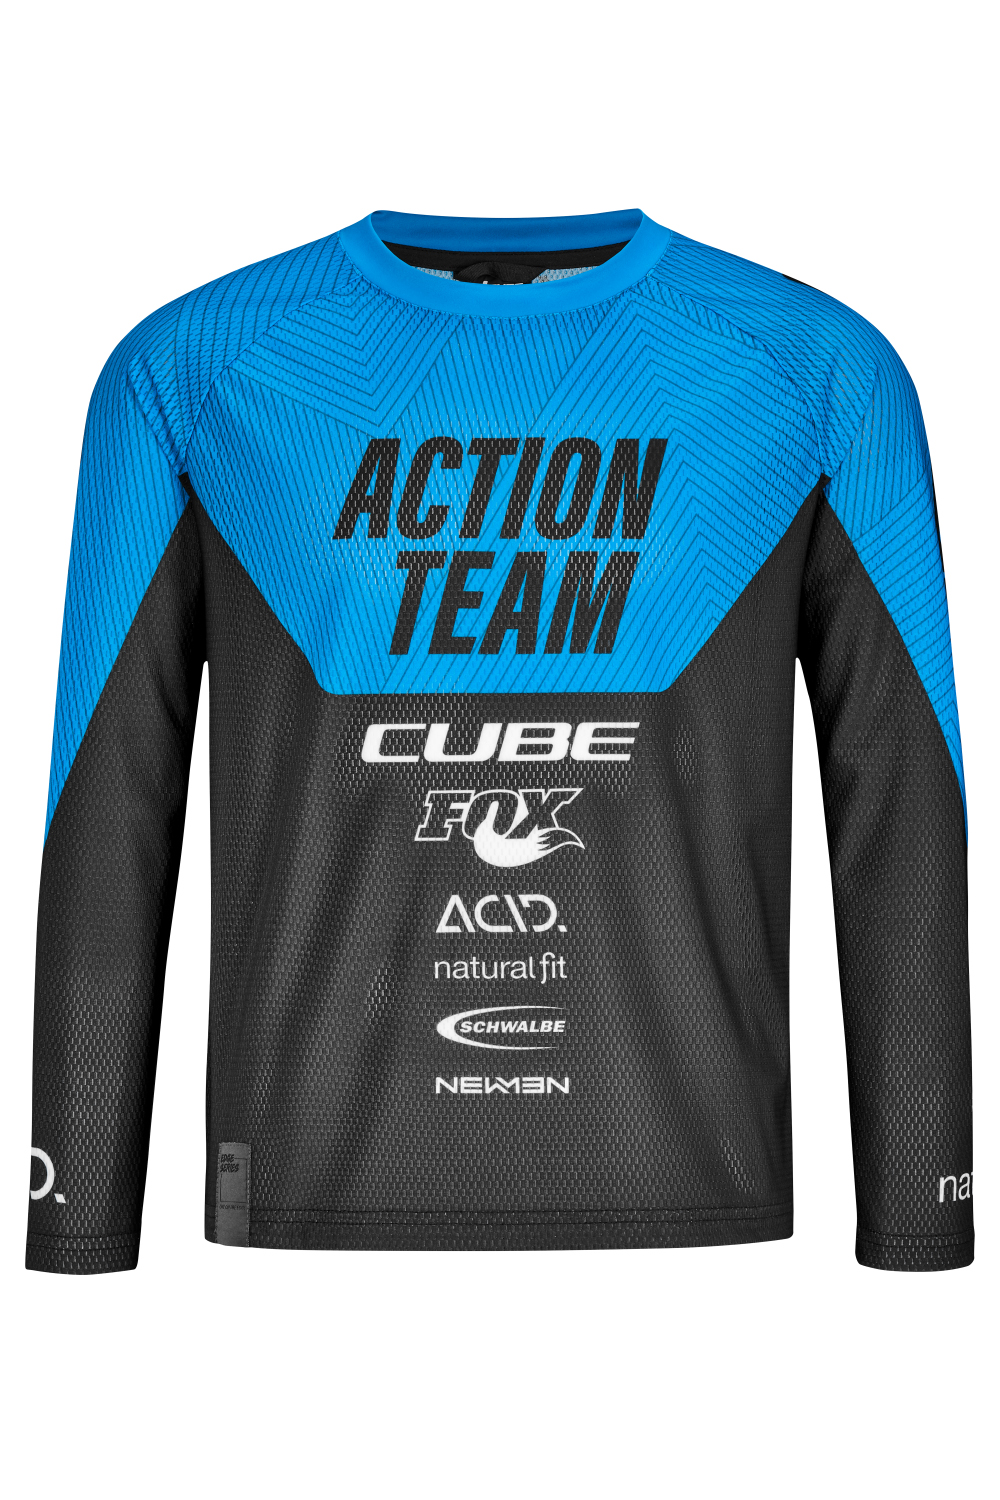 spion 945 Grijpen Cube Action team Shirt voor kids kopen? | Cube Kinderkleding